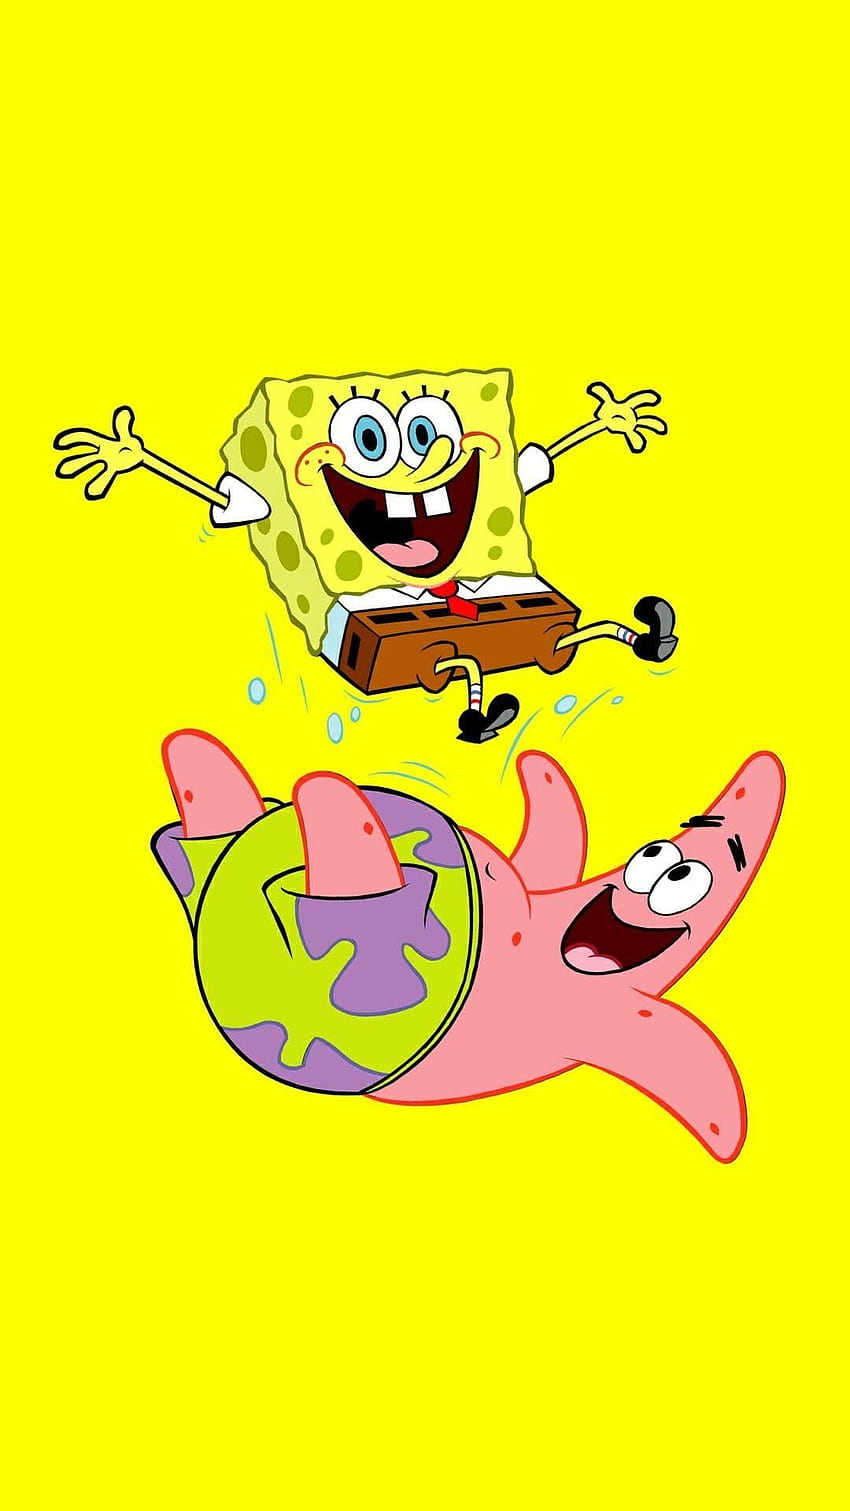 Spongebob SquarePants & Patrick Star di 2019. Spongebob, Spongebob Lucu wallpaper ponsel HD